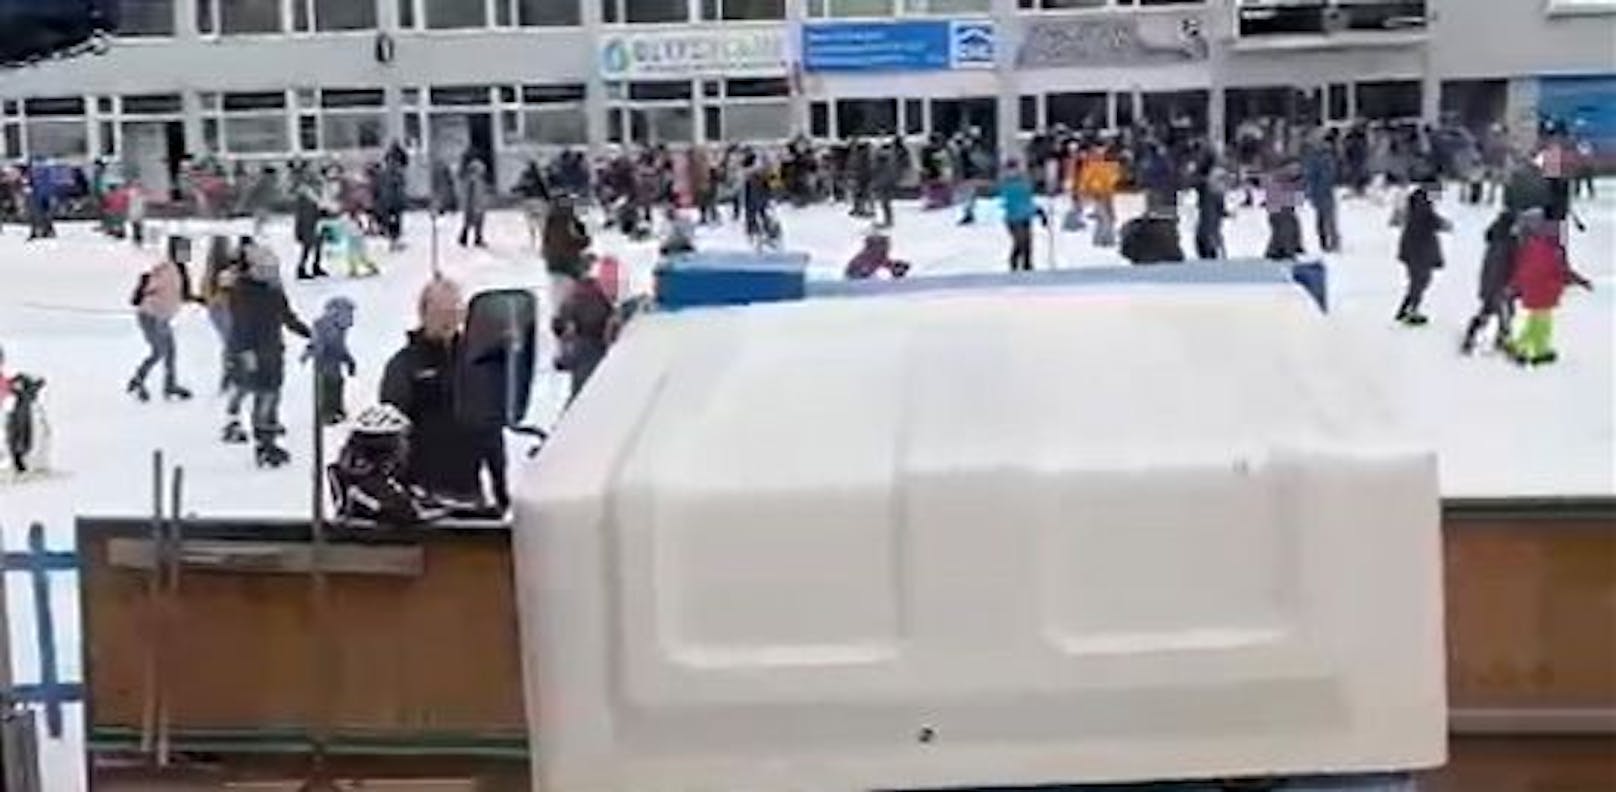 Unzählige Menschen besuchten am Sonntag den Wiener Eislaufverein.